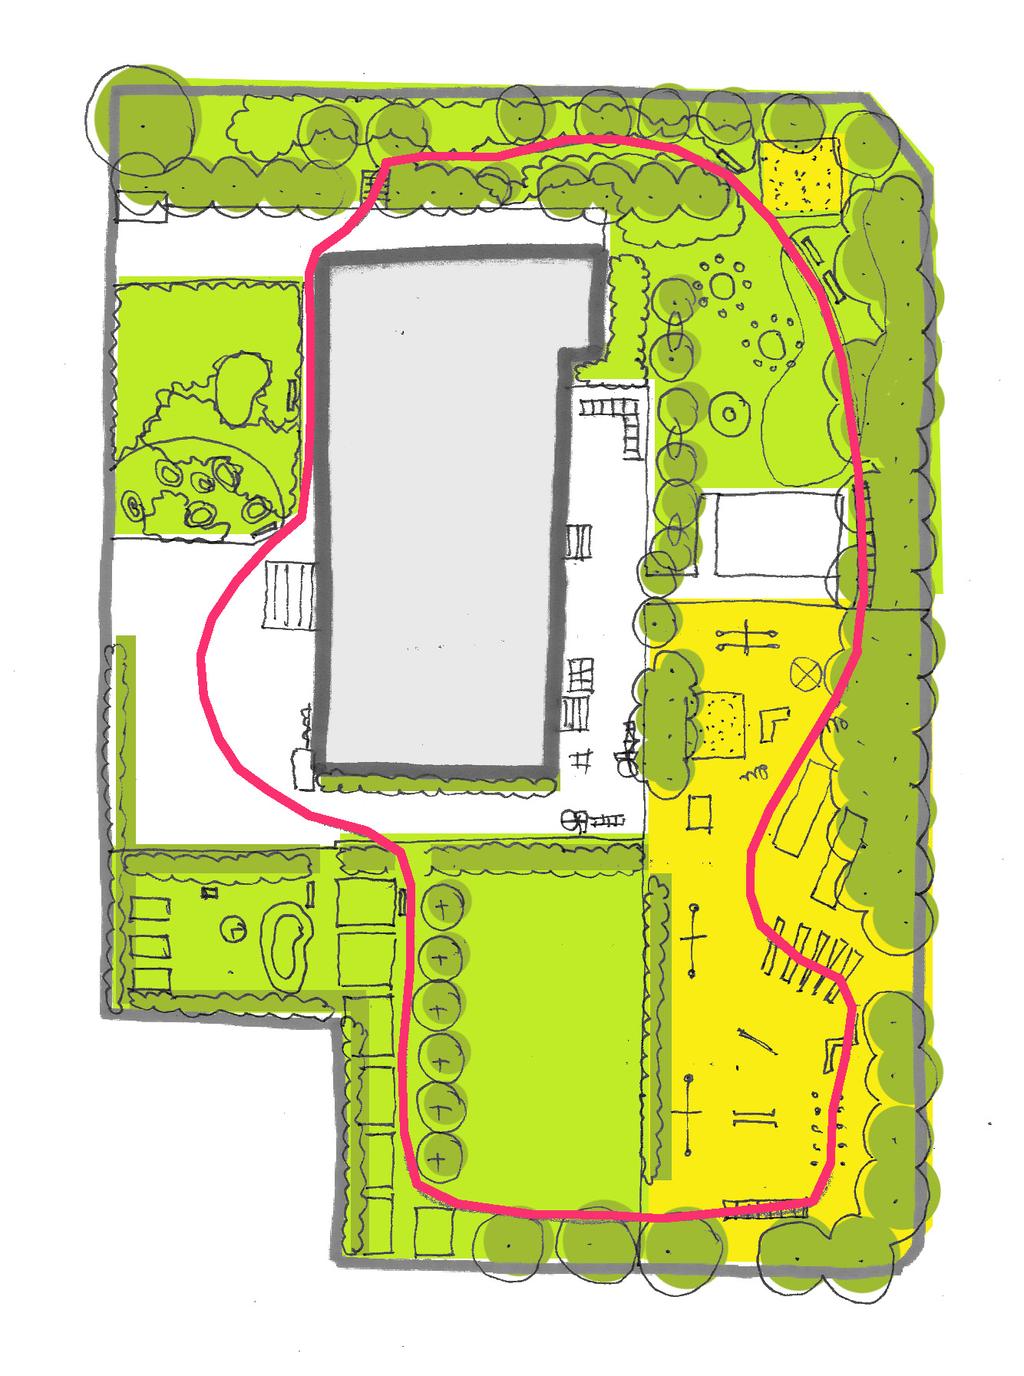 przyrodnicze azyle w miejskich przedszkolach / konsultacje architektoniczno-krajobrazowe / k01 / strona 3 3/ ZAGOSPODAROWANIE TERENU/ RZUT ogród leśny piaskownica łąka kwietna ogród pustynny: